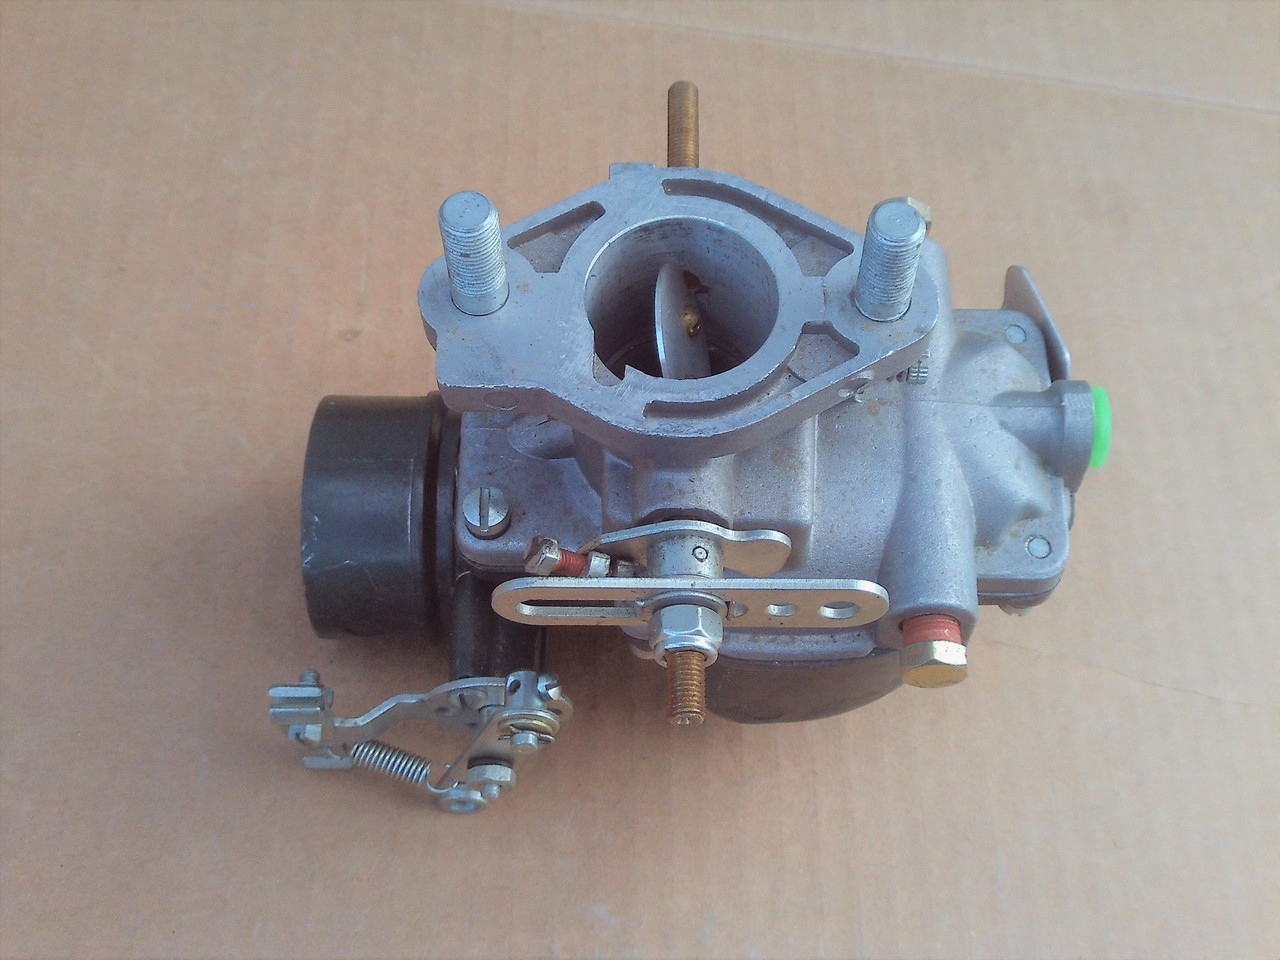 Carburetor for Massey Ferguson 194603M1, 194603M91, 520736M92, 773368M91, 773368V91